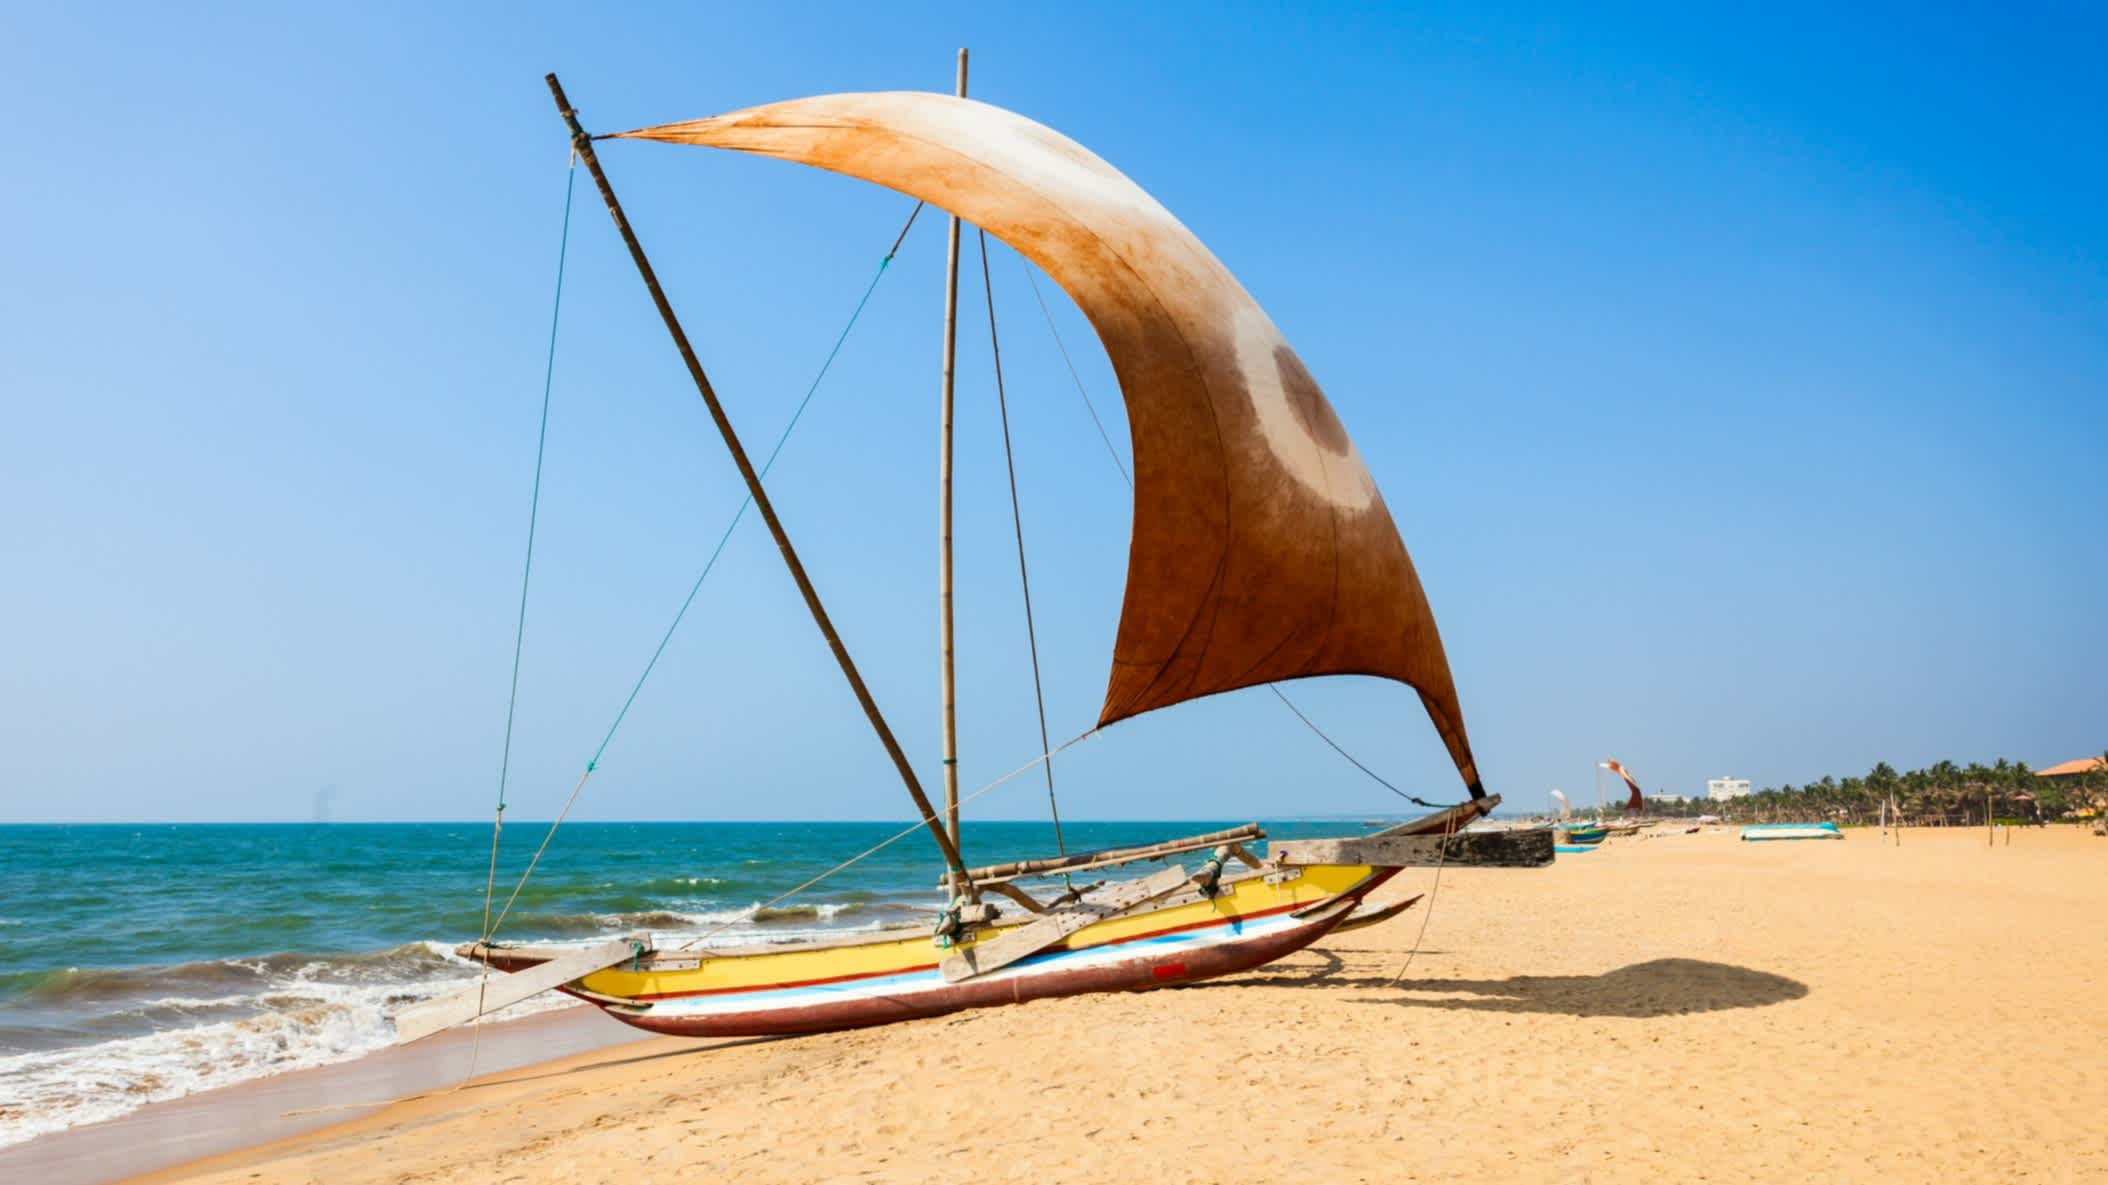 Bateau de tourisme sur la plage de Negombo, sur la côte ouest du Sri Lanka